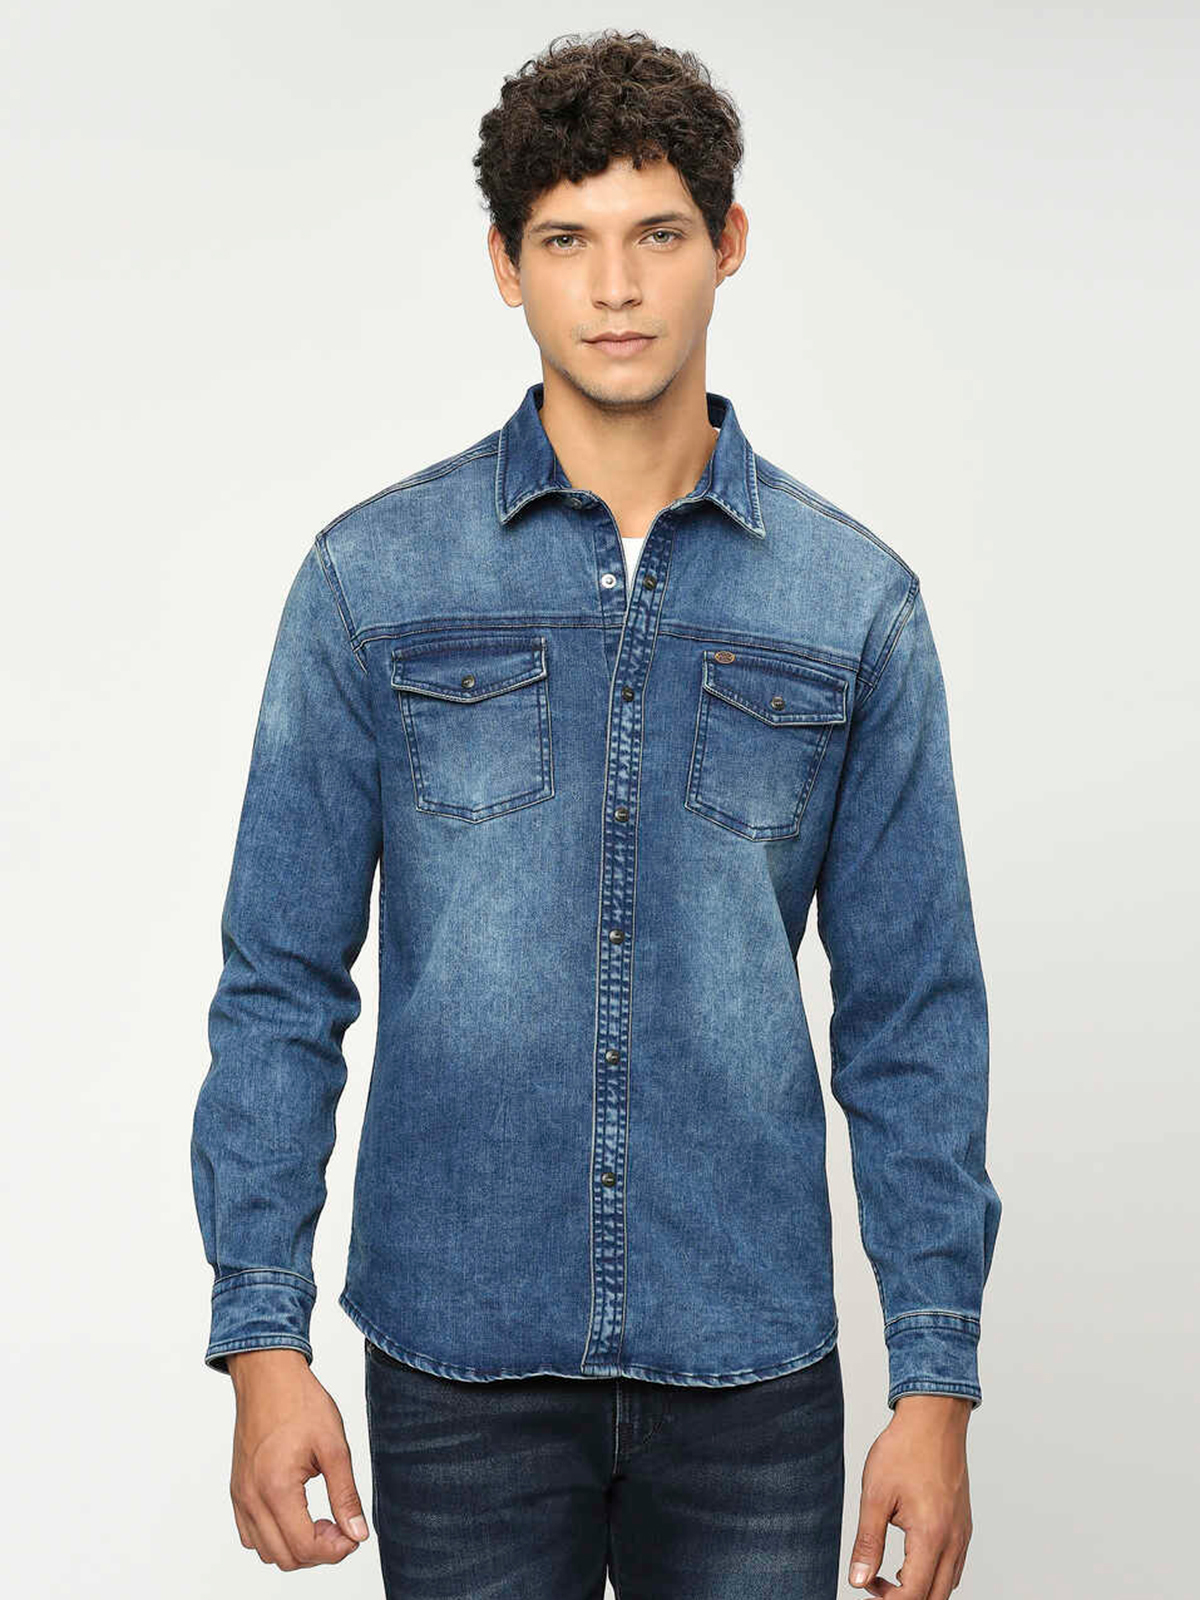 Short-sleeved denim shirt - Light denim blue - Men | H&M IN